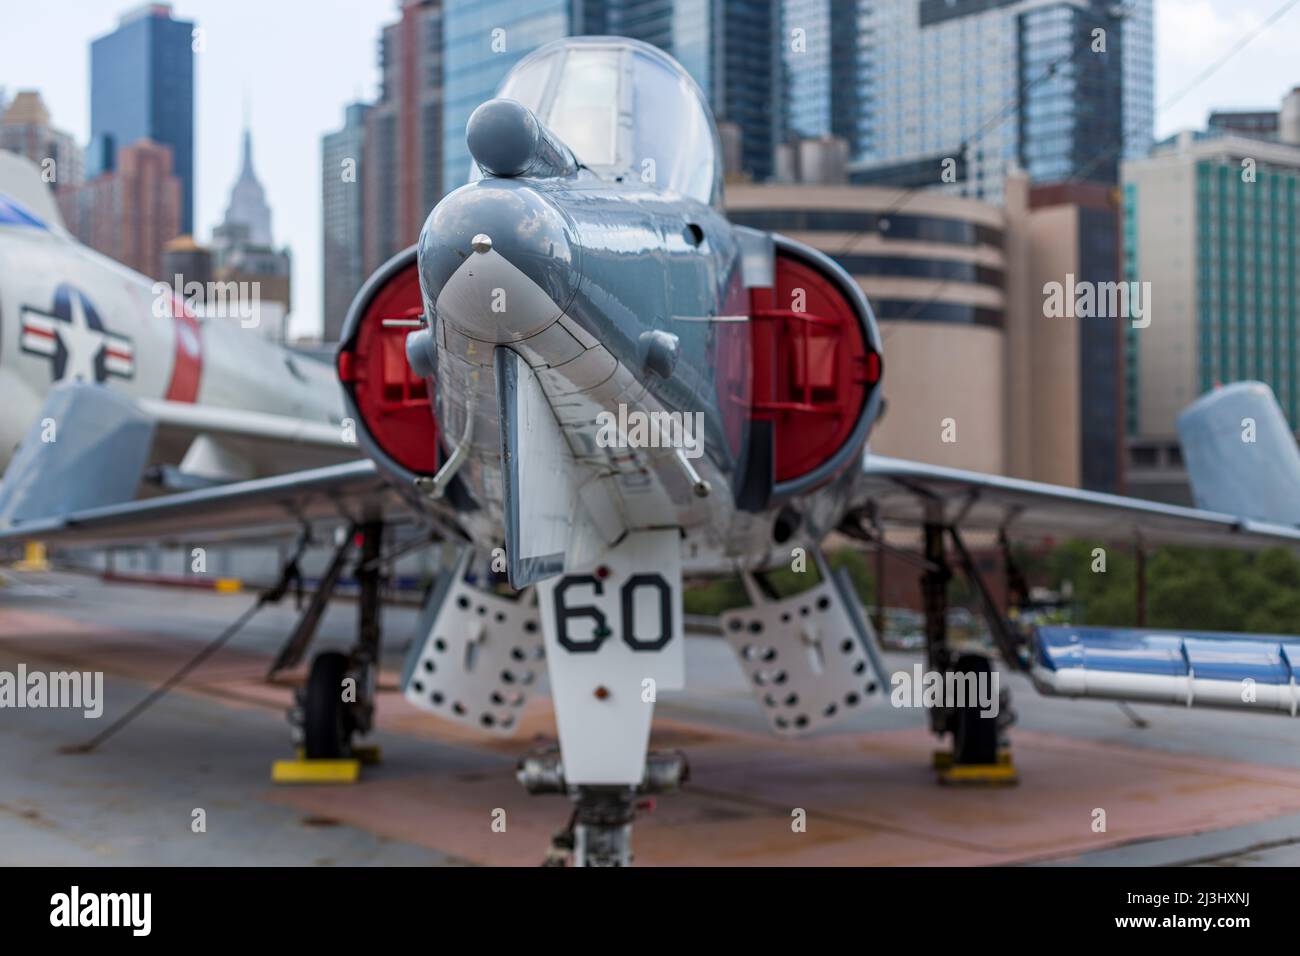 12 AV/W 46 ST, New York City, NY, USA, combattente McDonnell F-4N Phantom II all'Intrepid Sea, Air & Space Museum - un museo di storia militare e marittima americano espone la portaerei USS Intrepid. Foto Stock